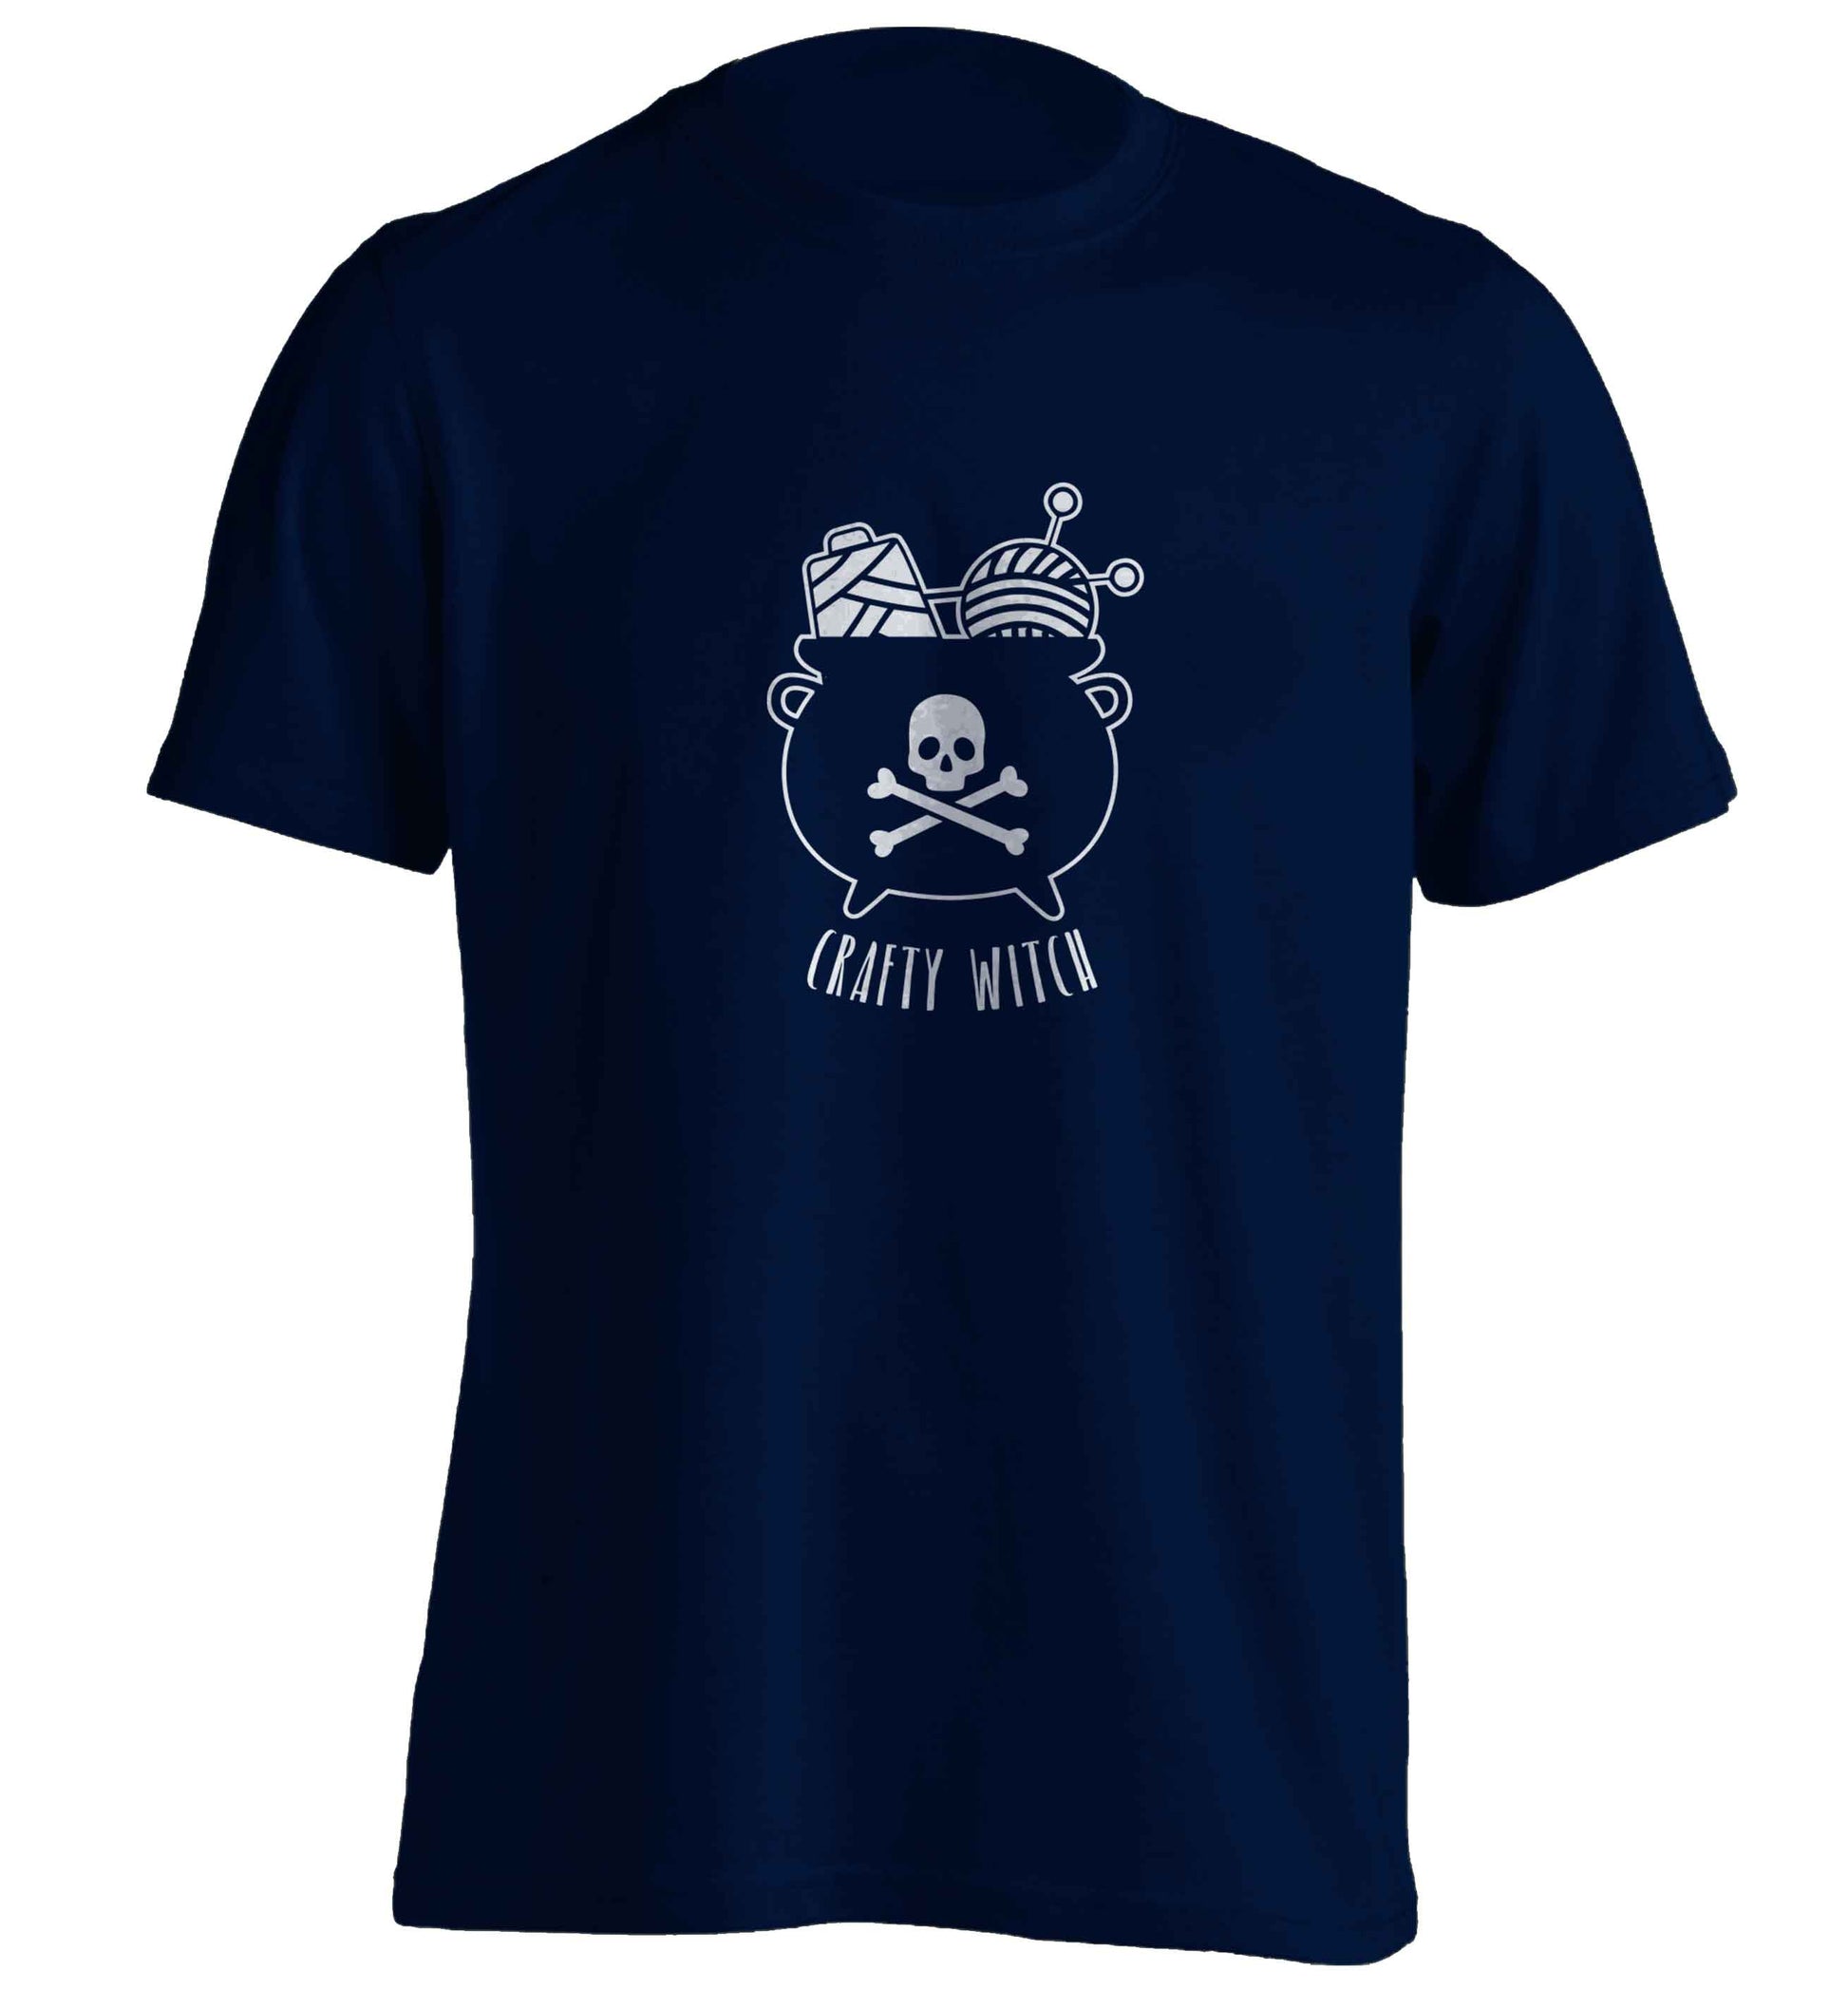 Crafty witch adults unisex navy Tshirt 2XL